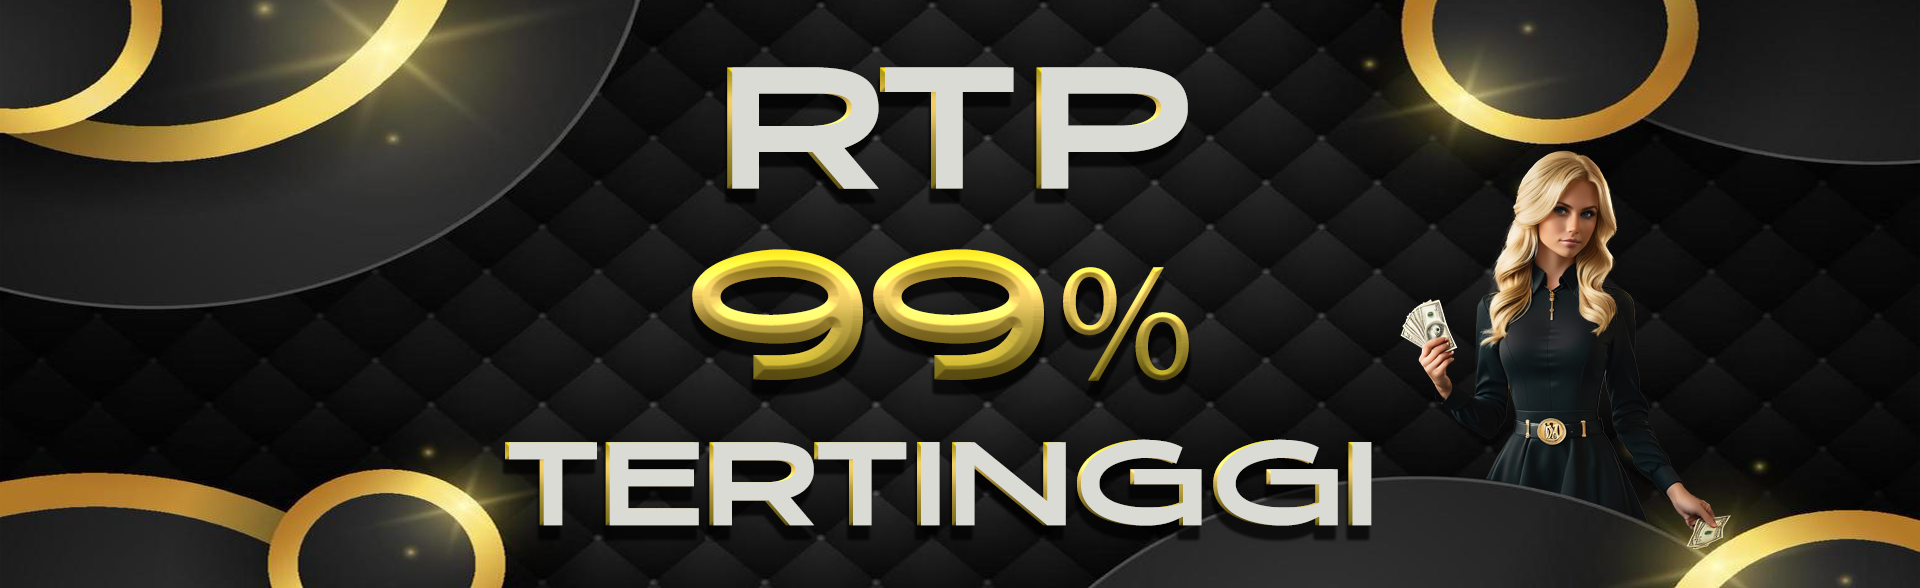 RTP 99% Tertinggi